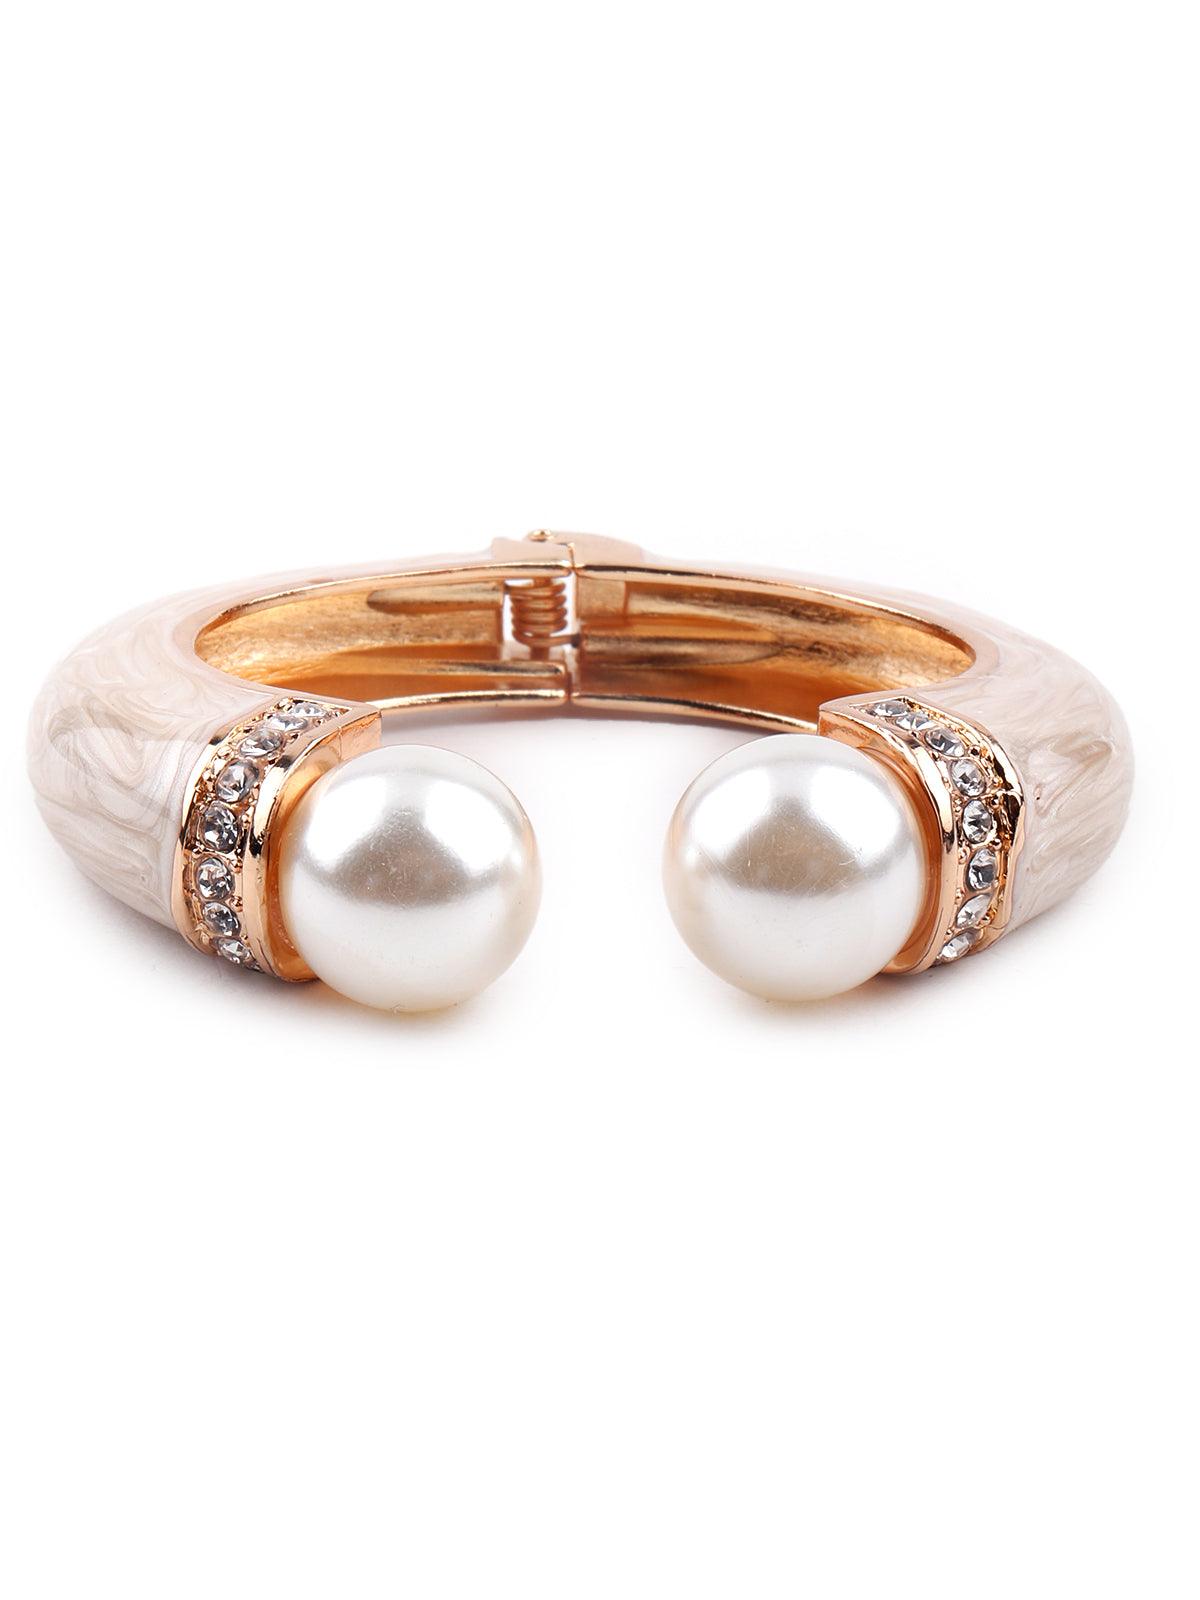 Stunning gold Kada bracelet for women - Odette